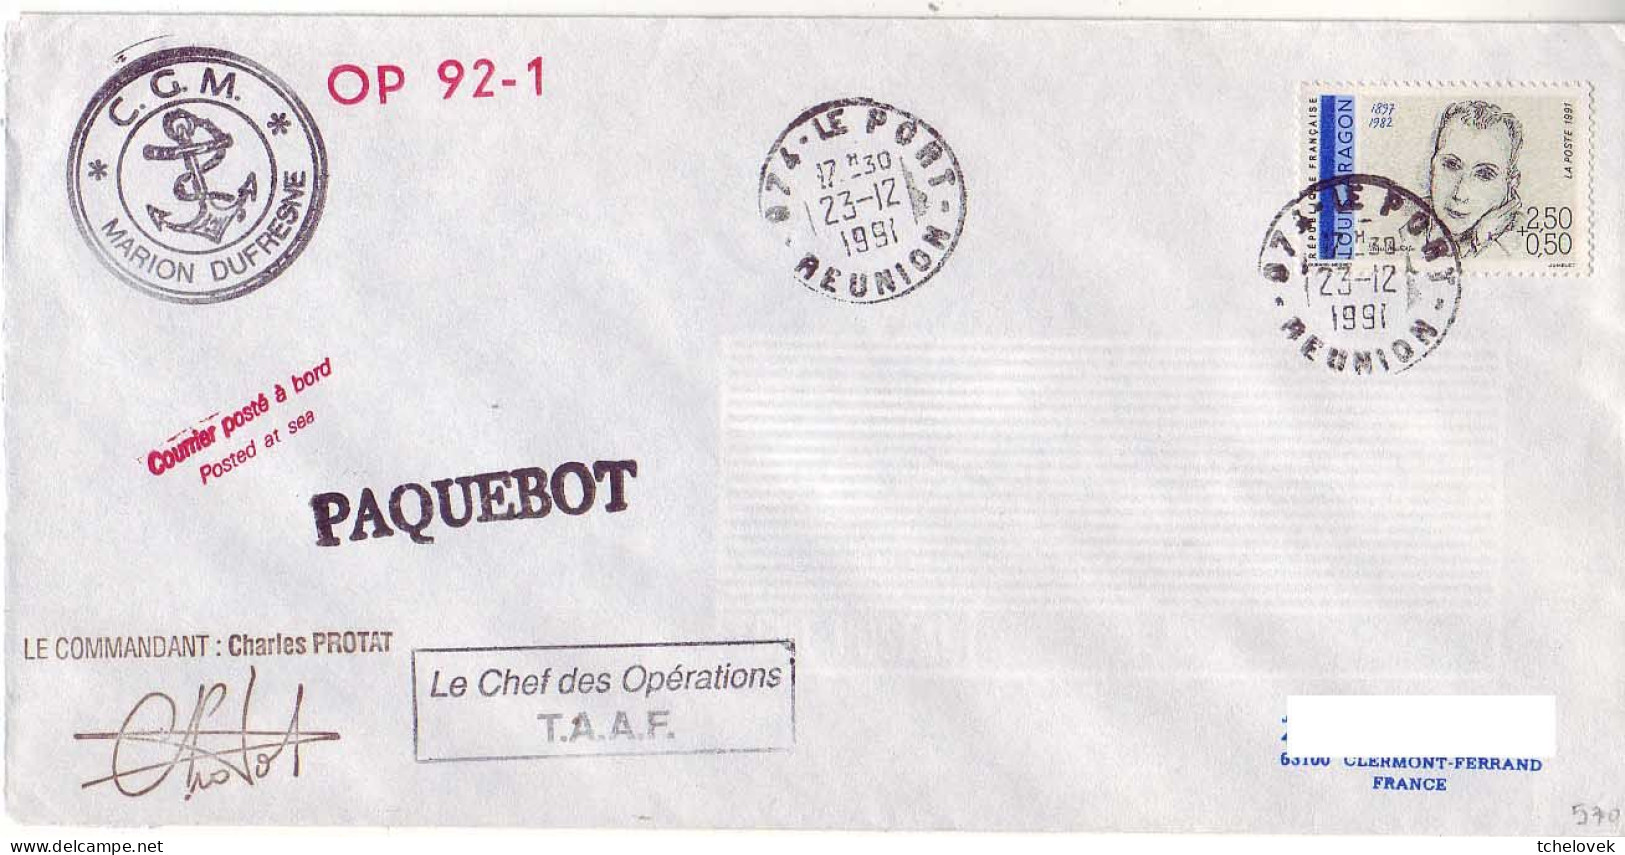 FSAT TAAF Marion Dufresne. 23.12.91 Le Port Reunion Op 92.1 - Lettres & Documents